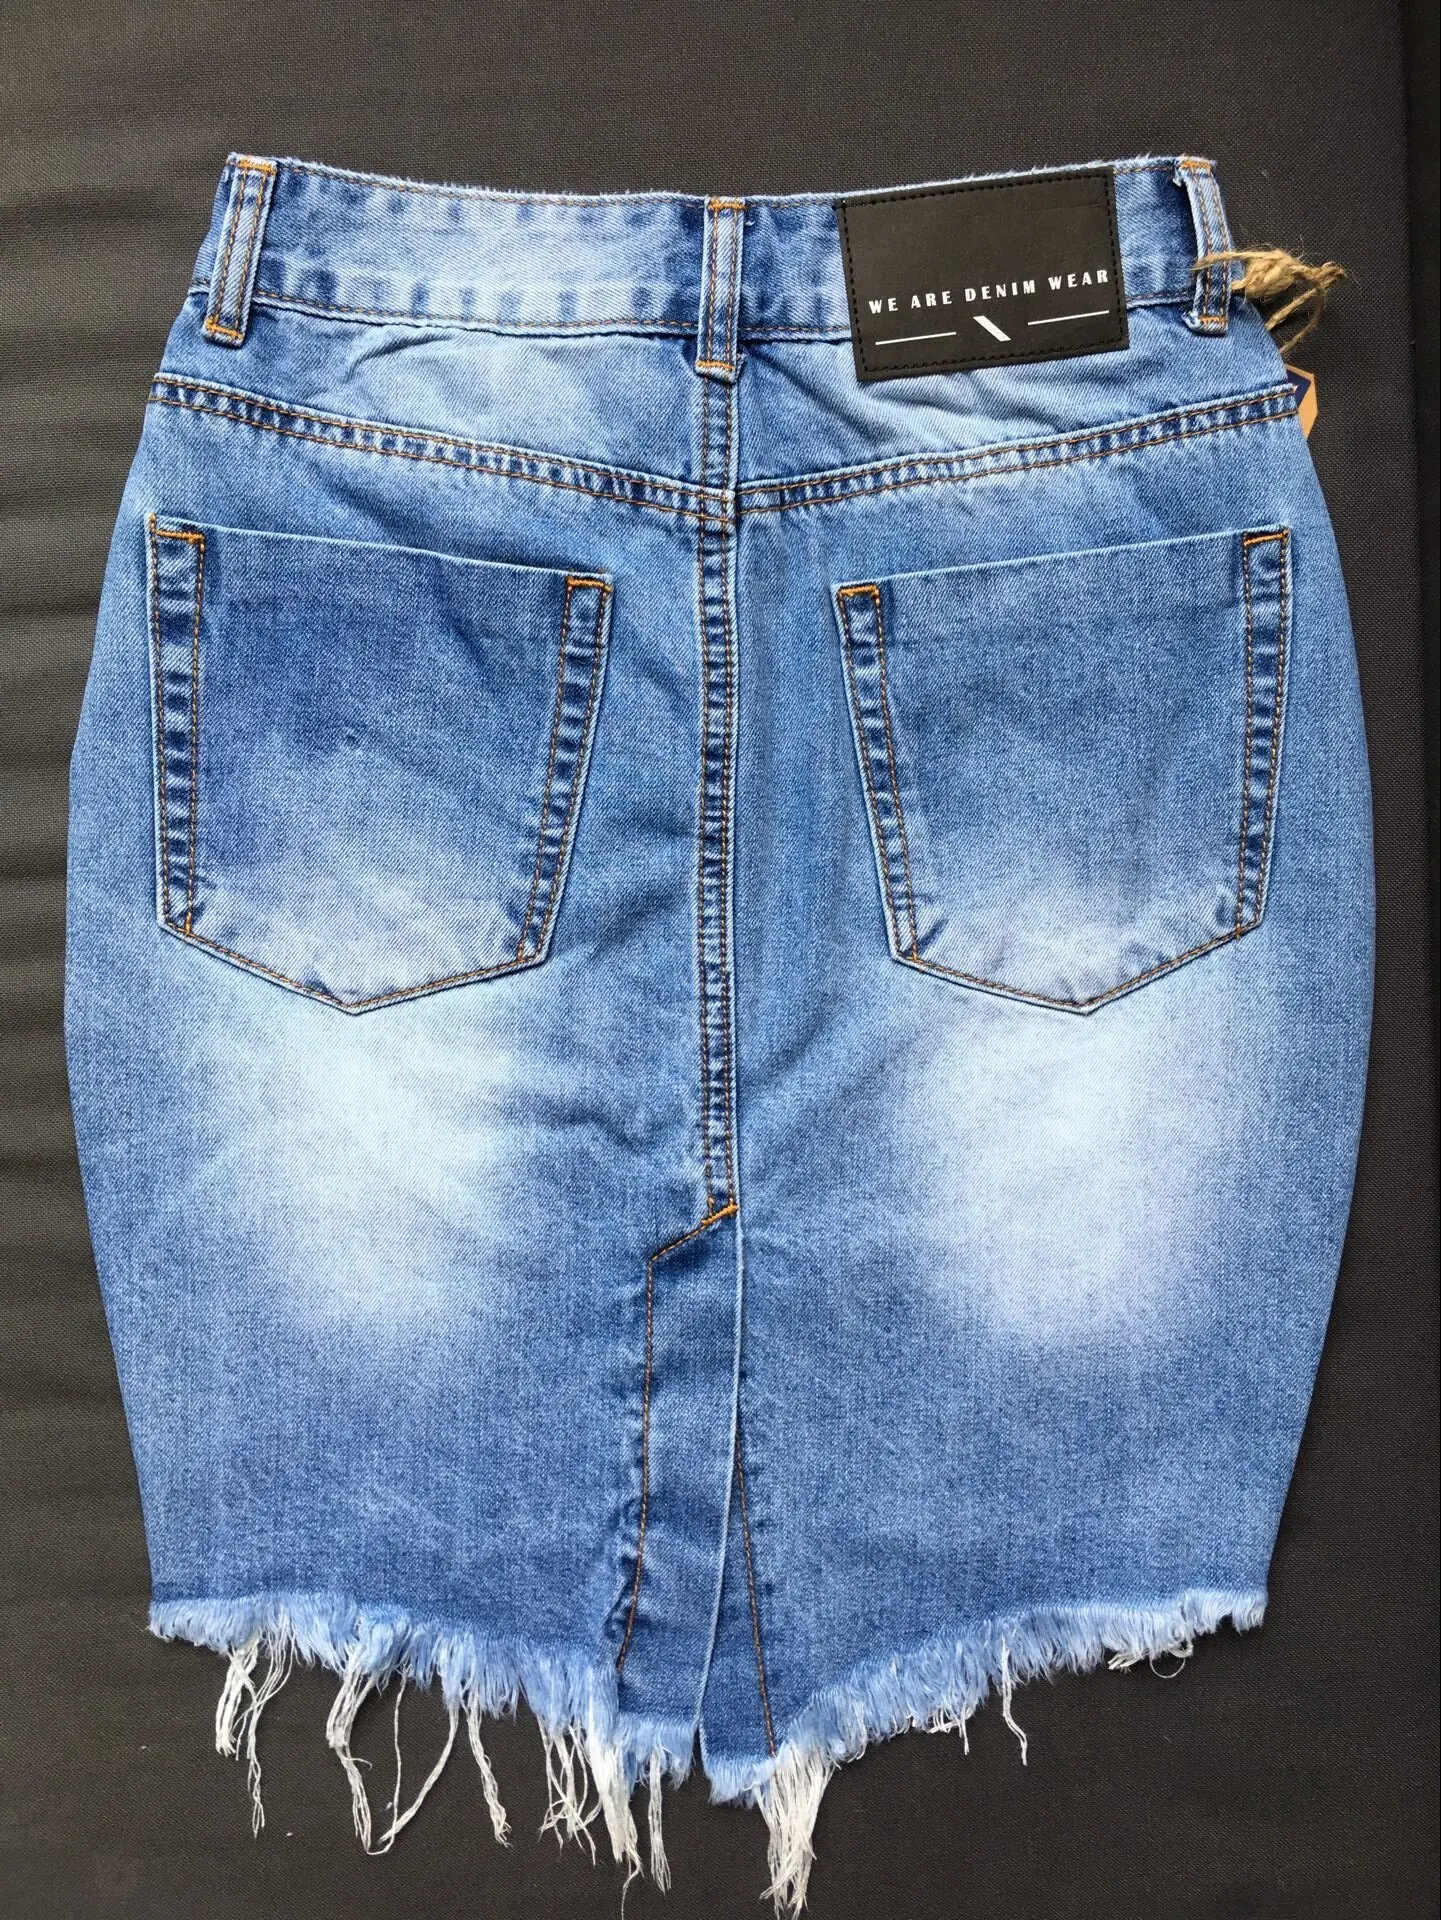 Джинсовая юбка Летние повседневные модные джинсы с потертостями и дырками с разрезом на высокой талии синяя джинсовая юбка винтажная мини-юбка feminina